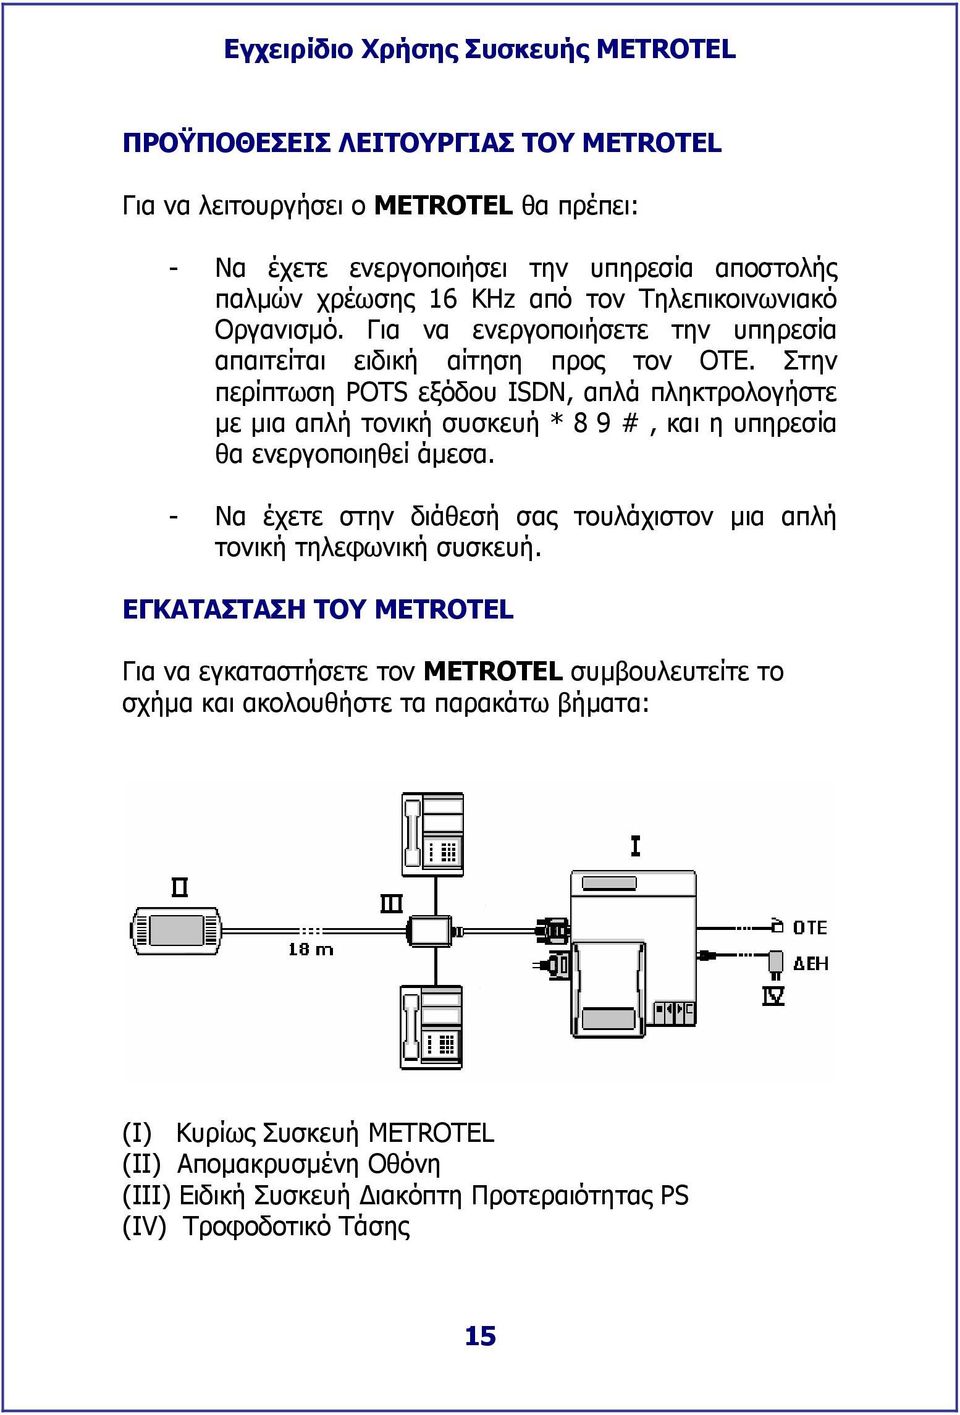 Στην περίπτωση POTS εξόδου ISDN, απλά πληκτρολογήστε µε µια απλή τονική συσκευή * 8 9 #, και η υπηρεσία θα ενεργοποιηθεί άµεσα.